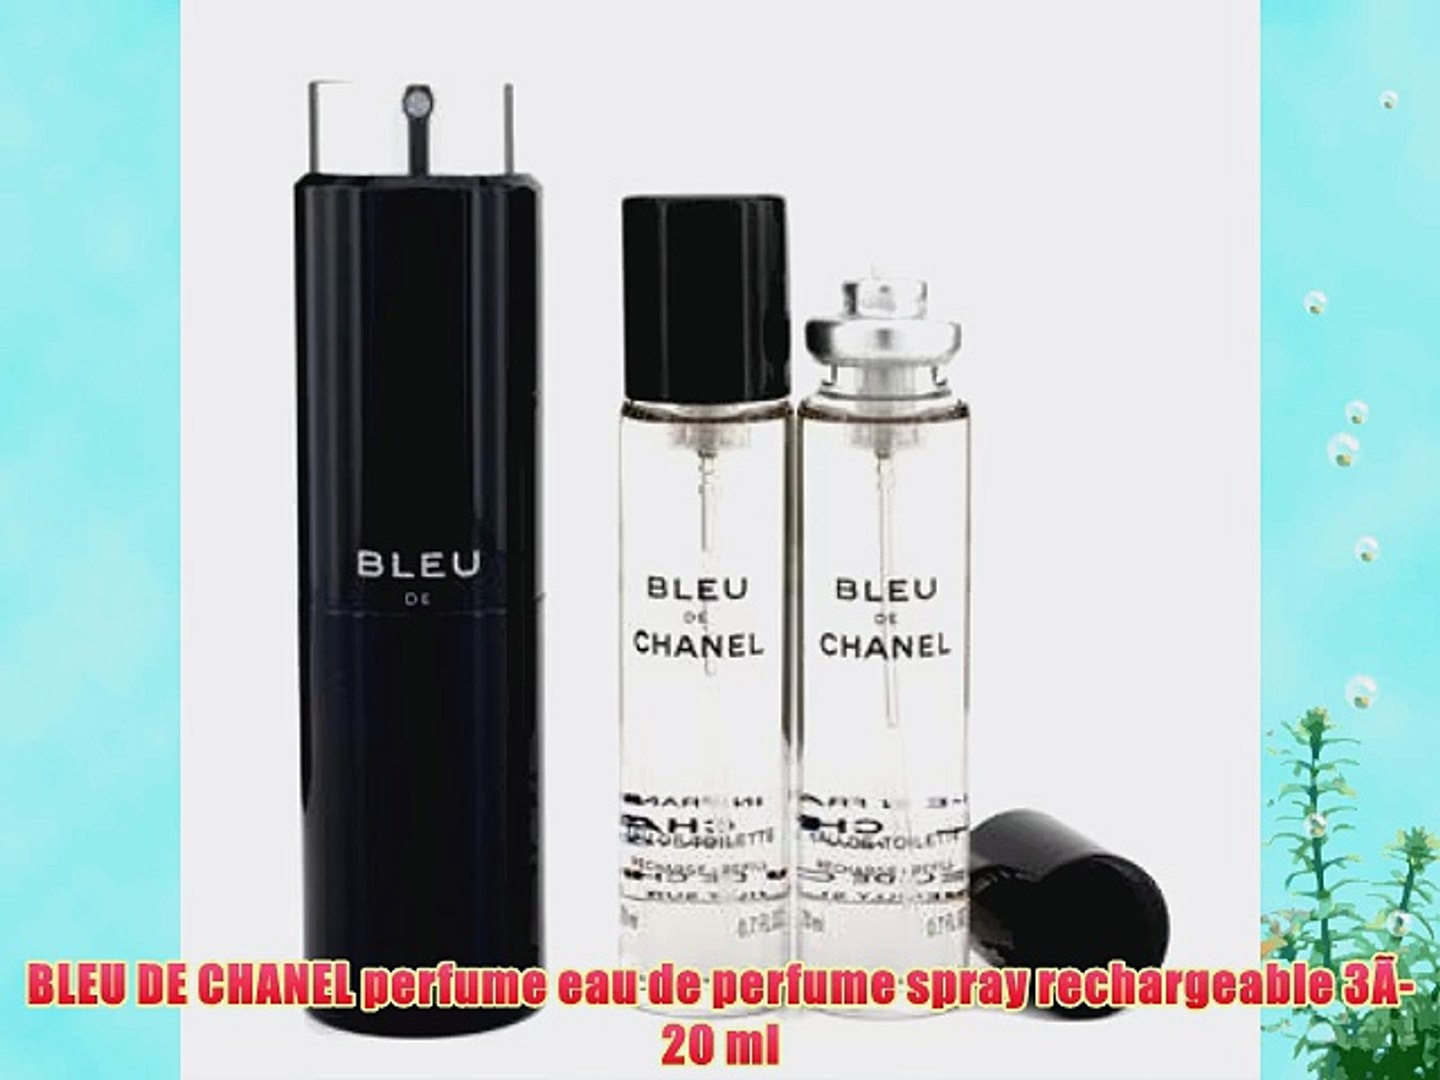 BLEU DE CHANEL perfume eau de perfume spray rechargeable 3?-20 ml